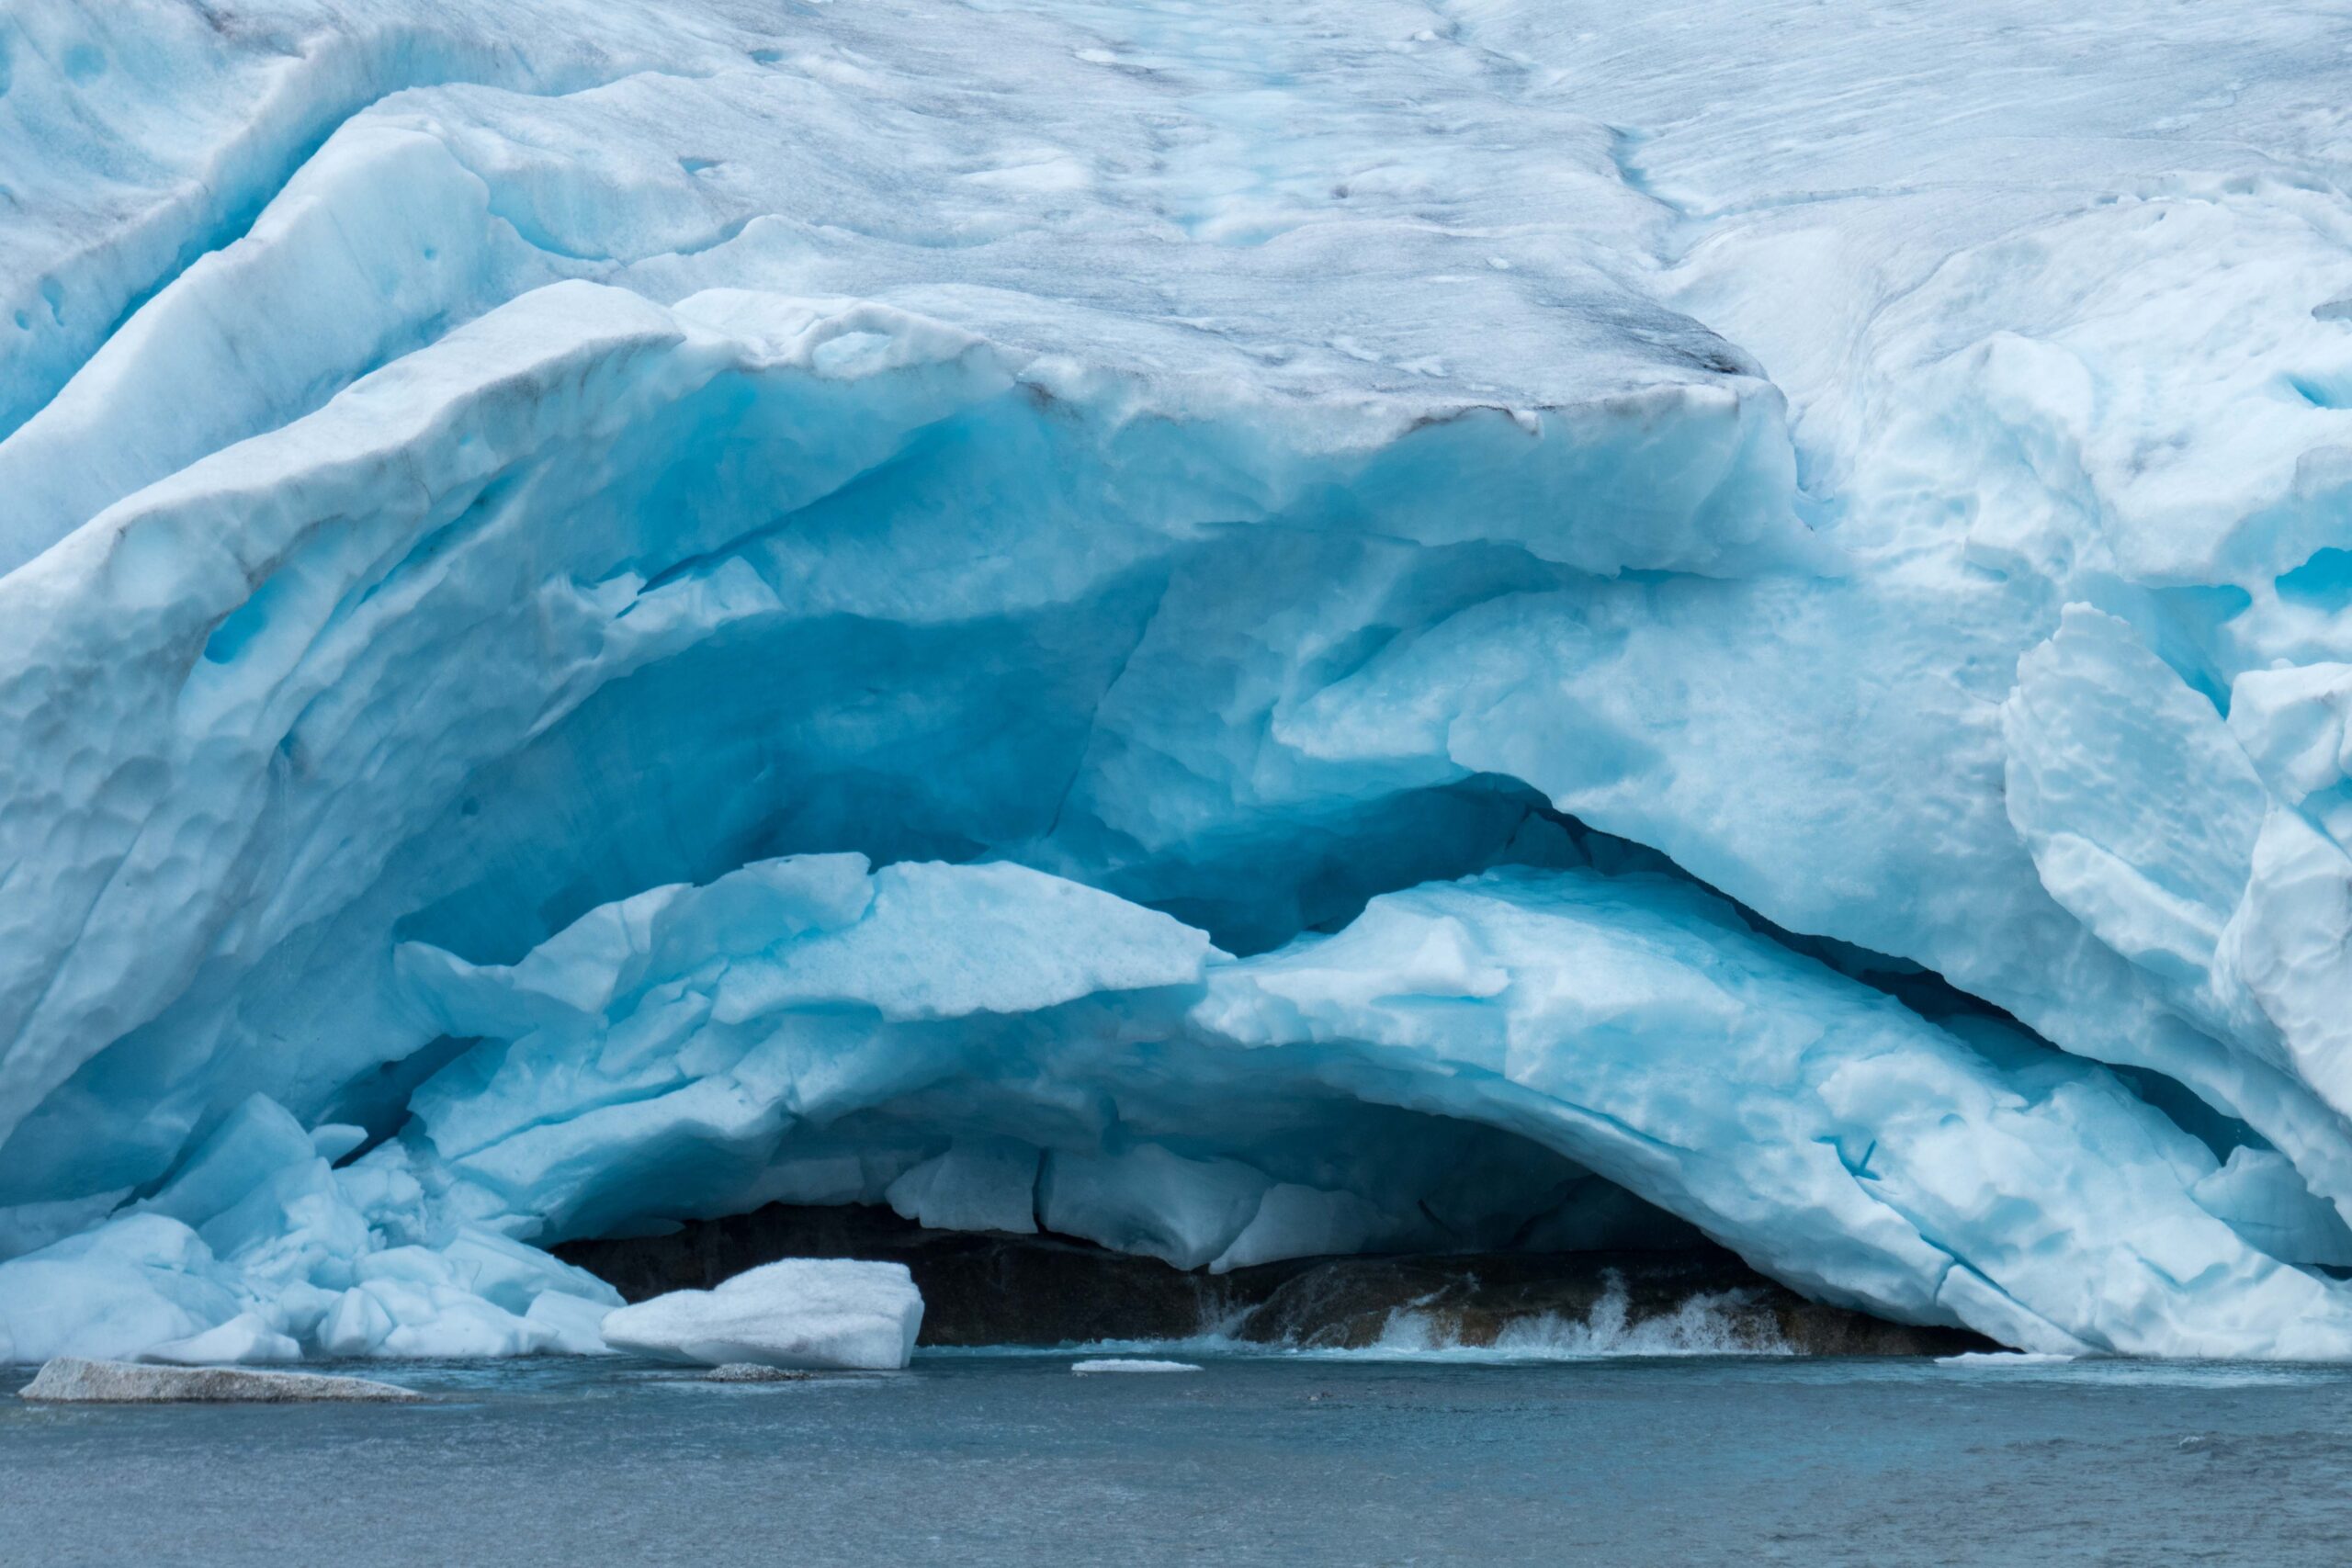 Gletsjergrot van de Tuftebreen, augustus 2020.